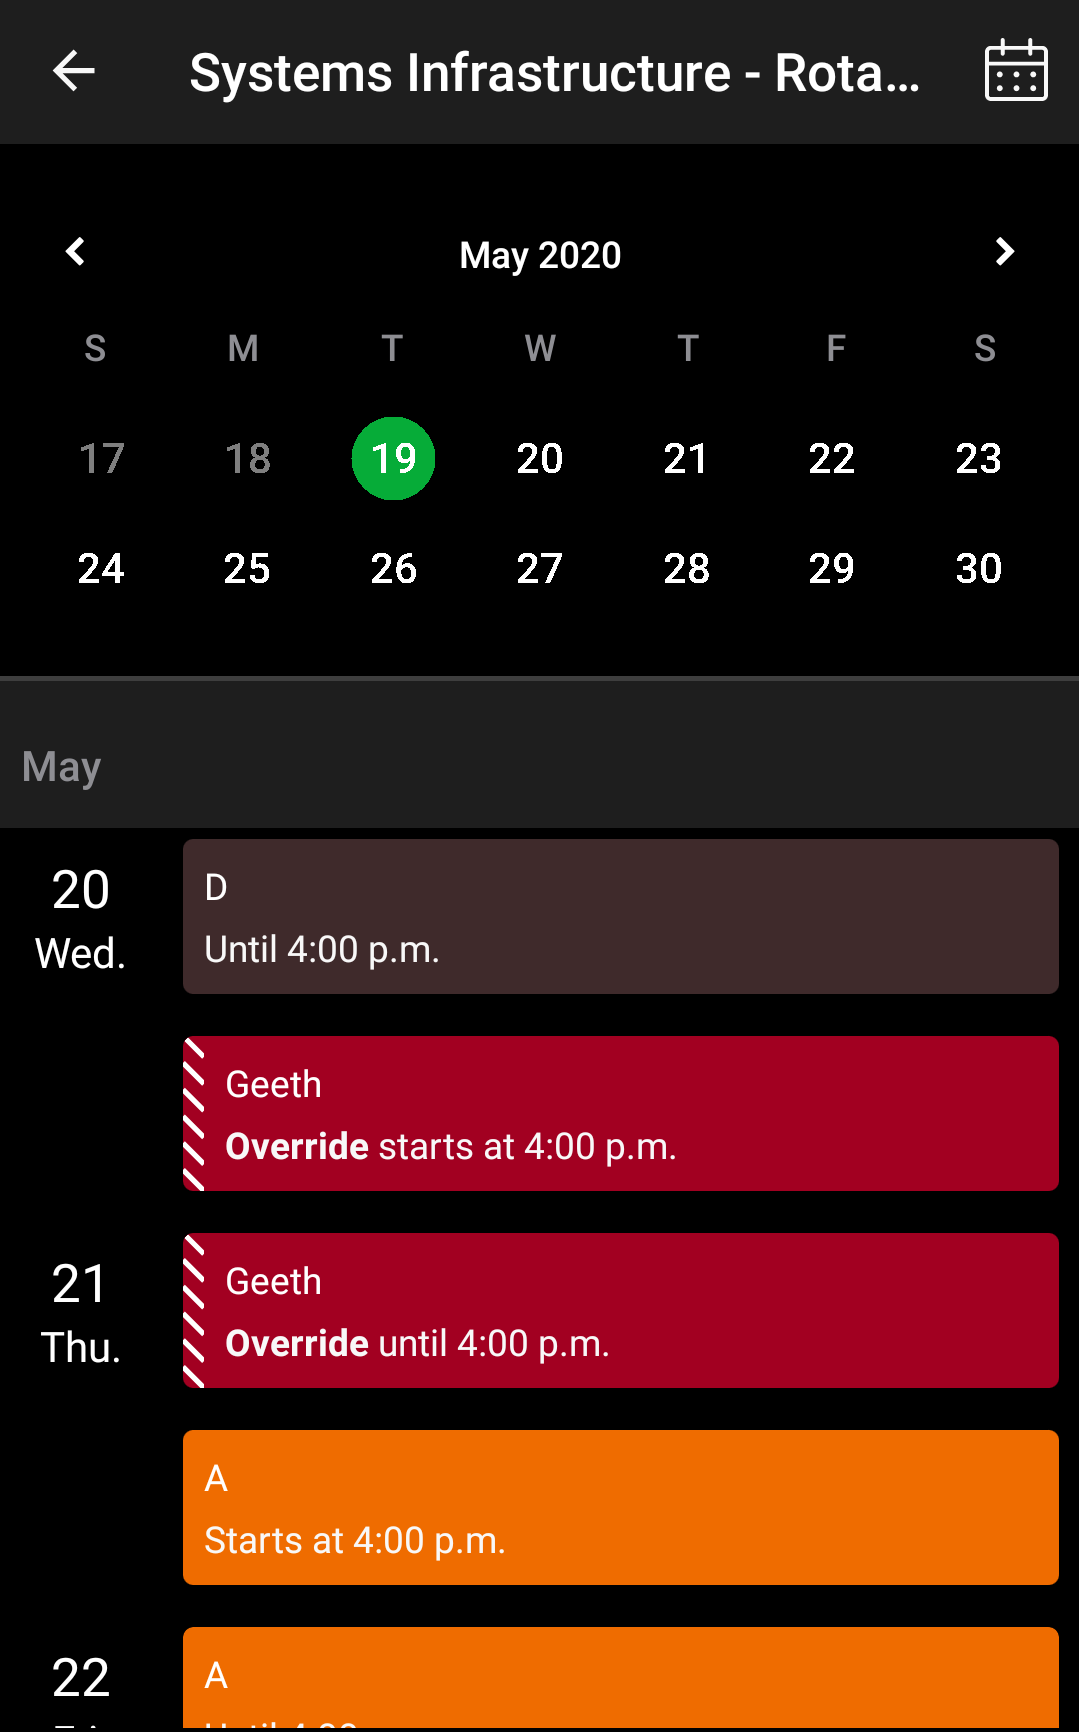 Scheduling overrides